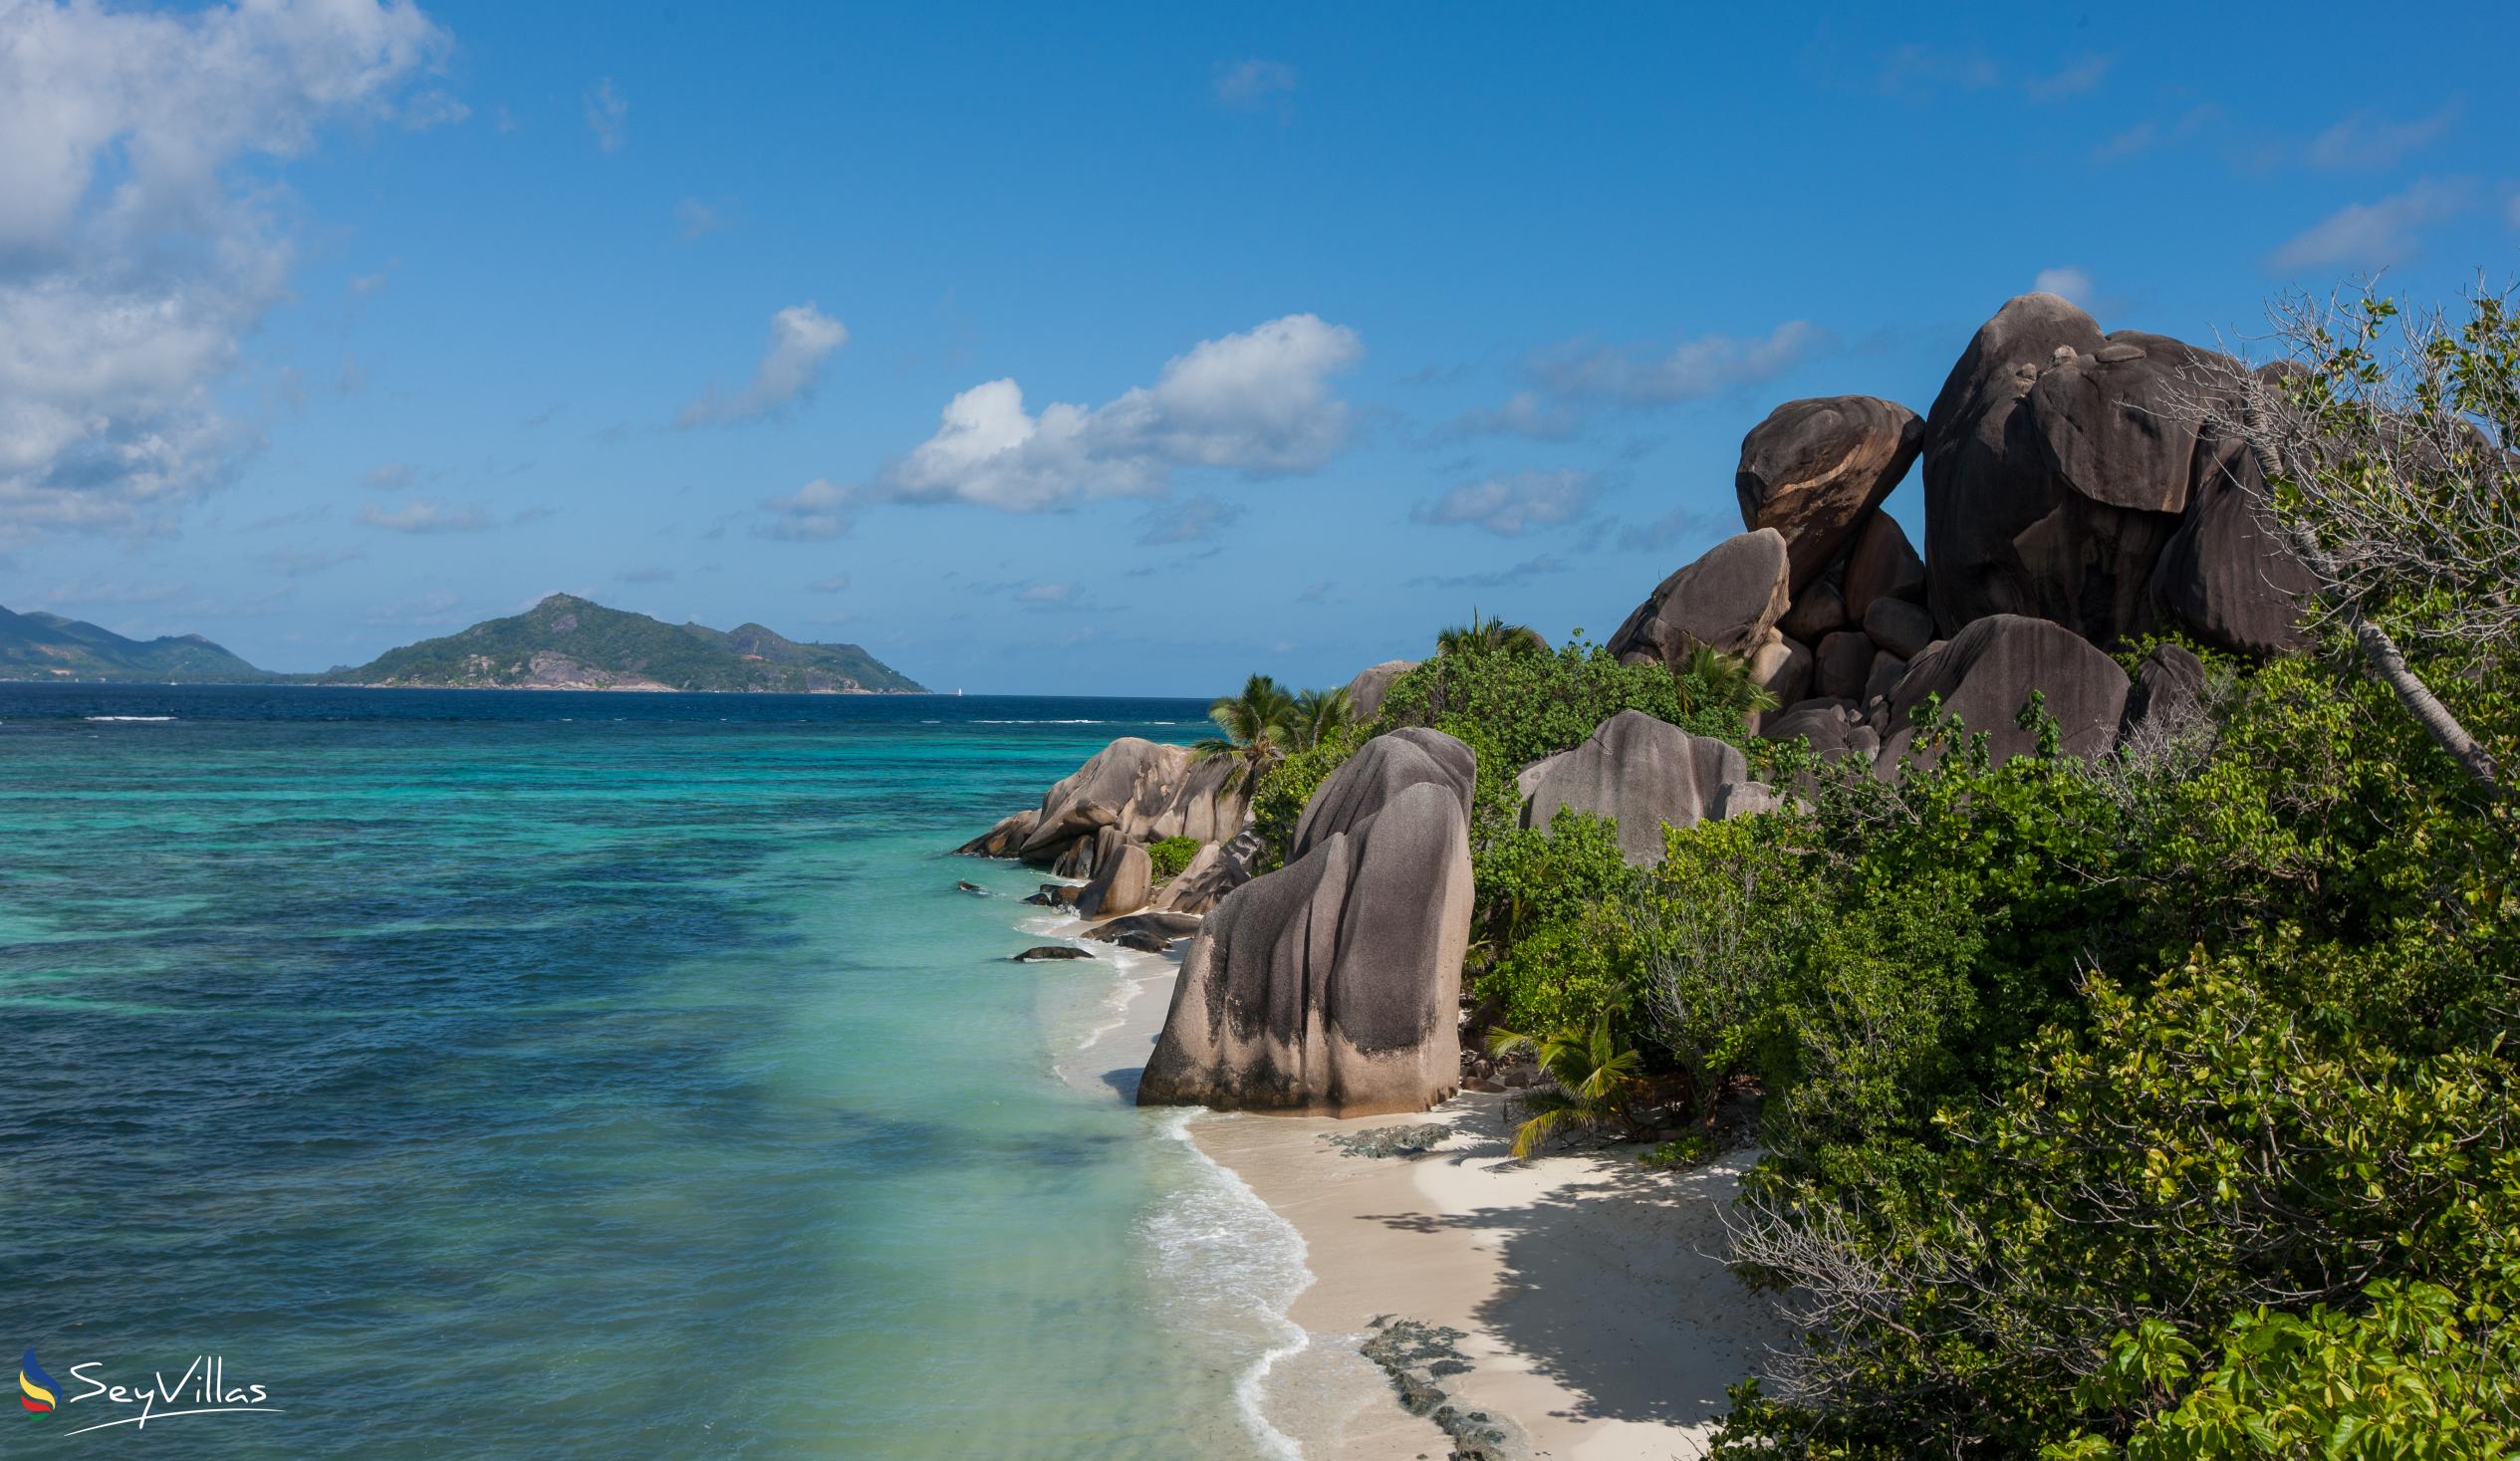 Photo 44: Pension Fidele - Beaches - La Digue (Seychelles)